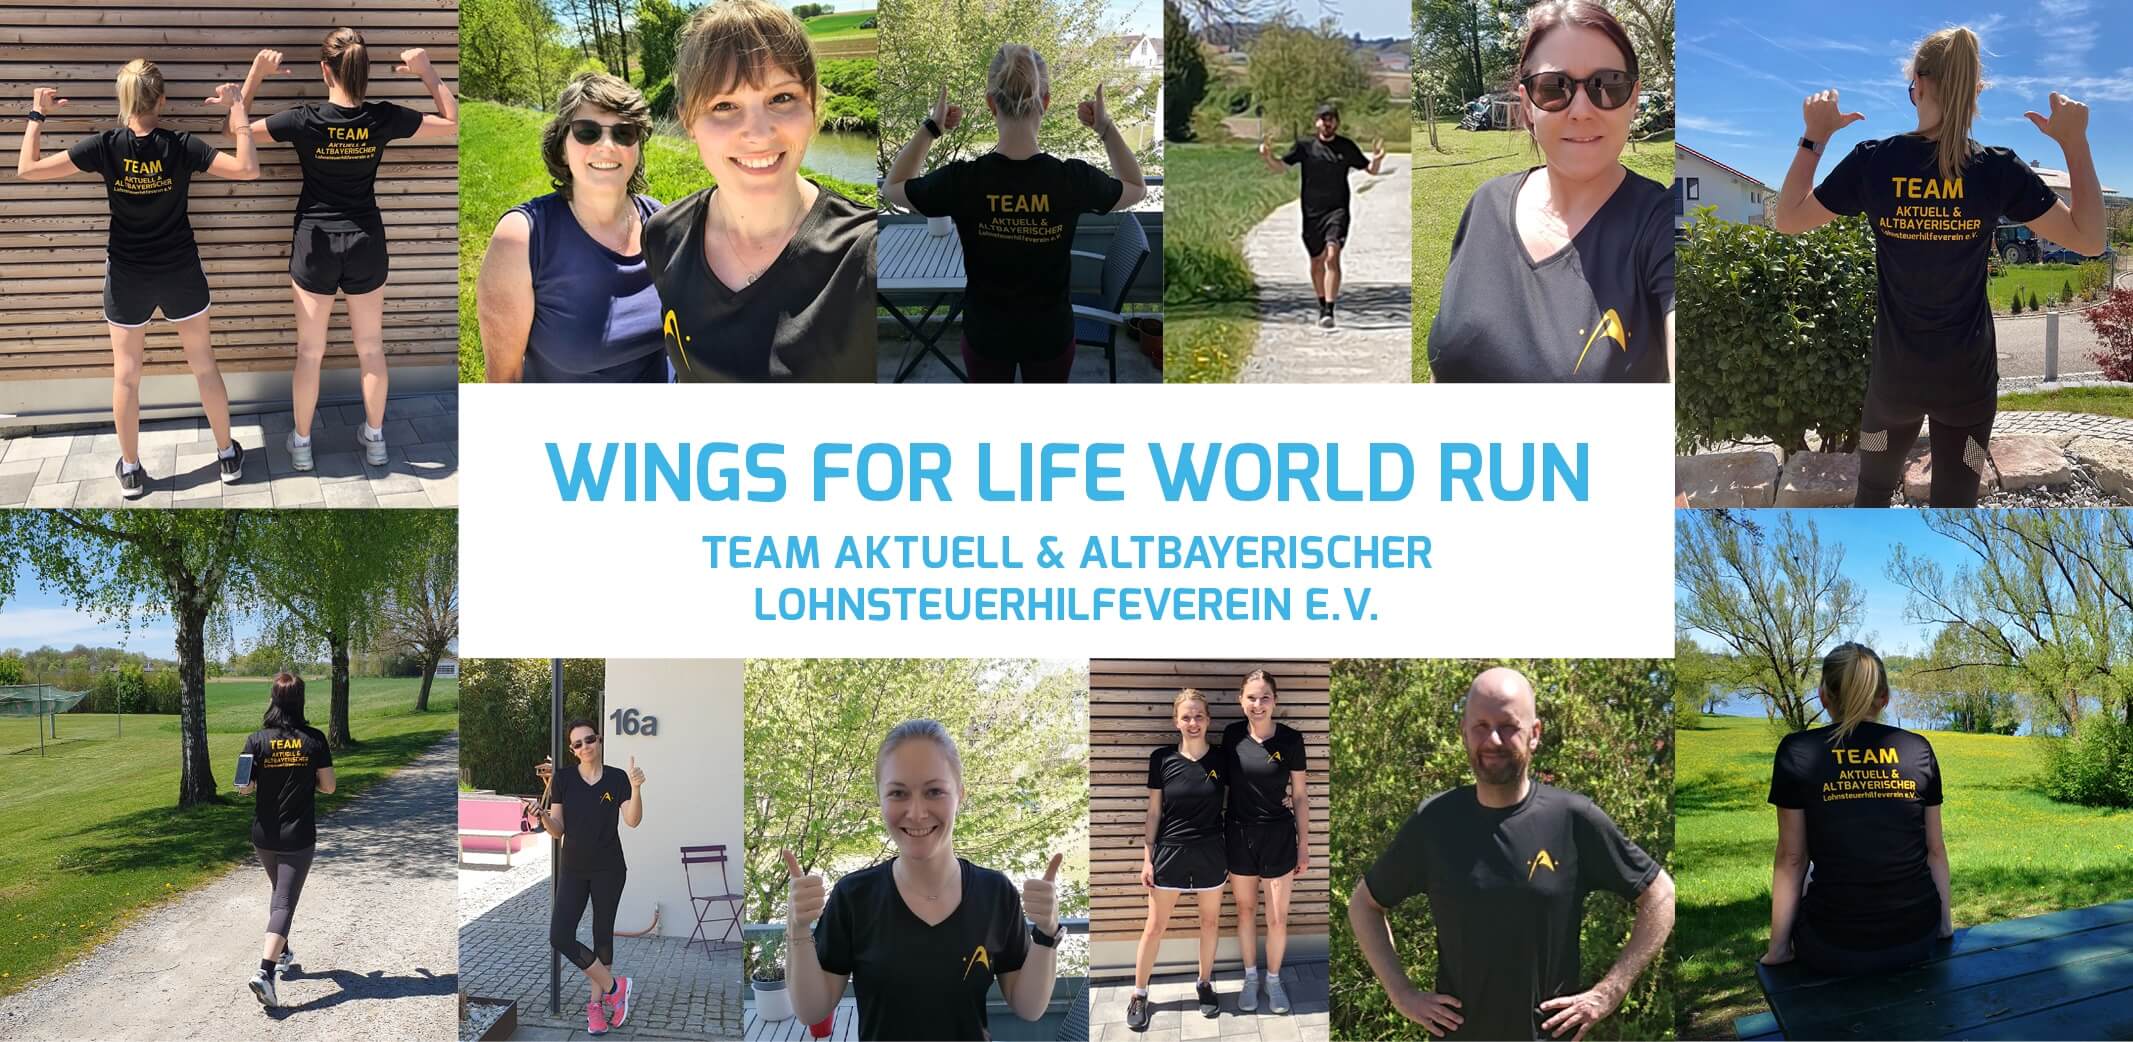 Wings for Life World Run: Gemeinsam laufen für das Spendenziel!